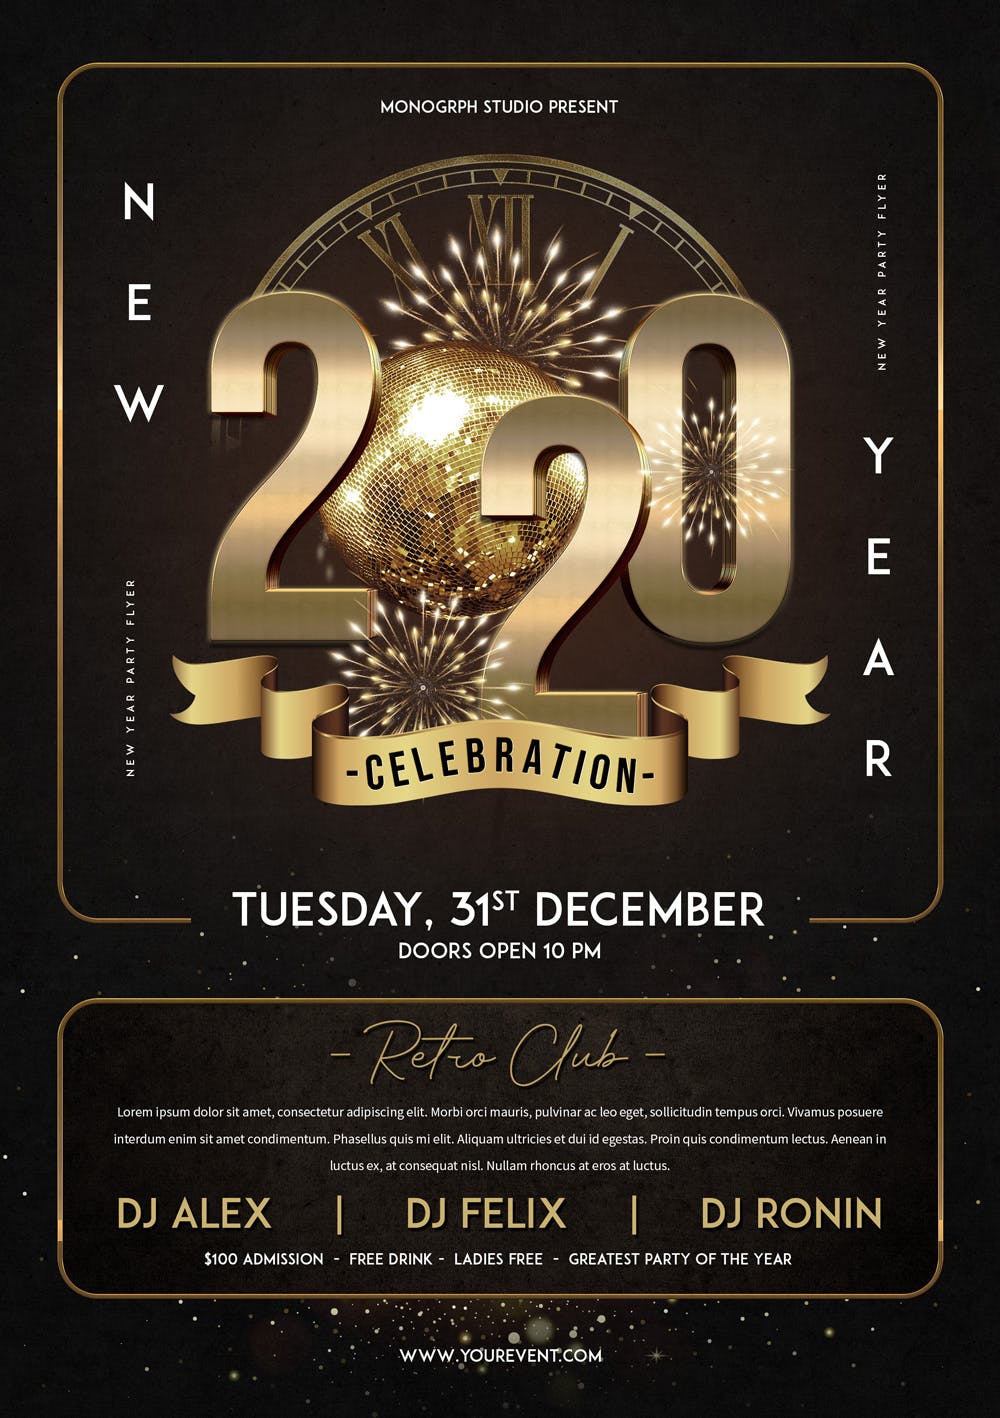 立体金属字2020年新年主题海报传单第一素材精选PSD模板 New Year Party Flyer插图(1)